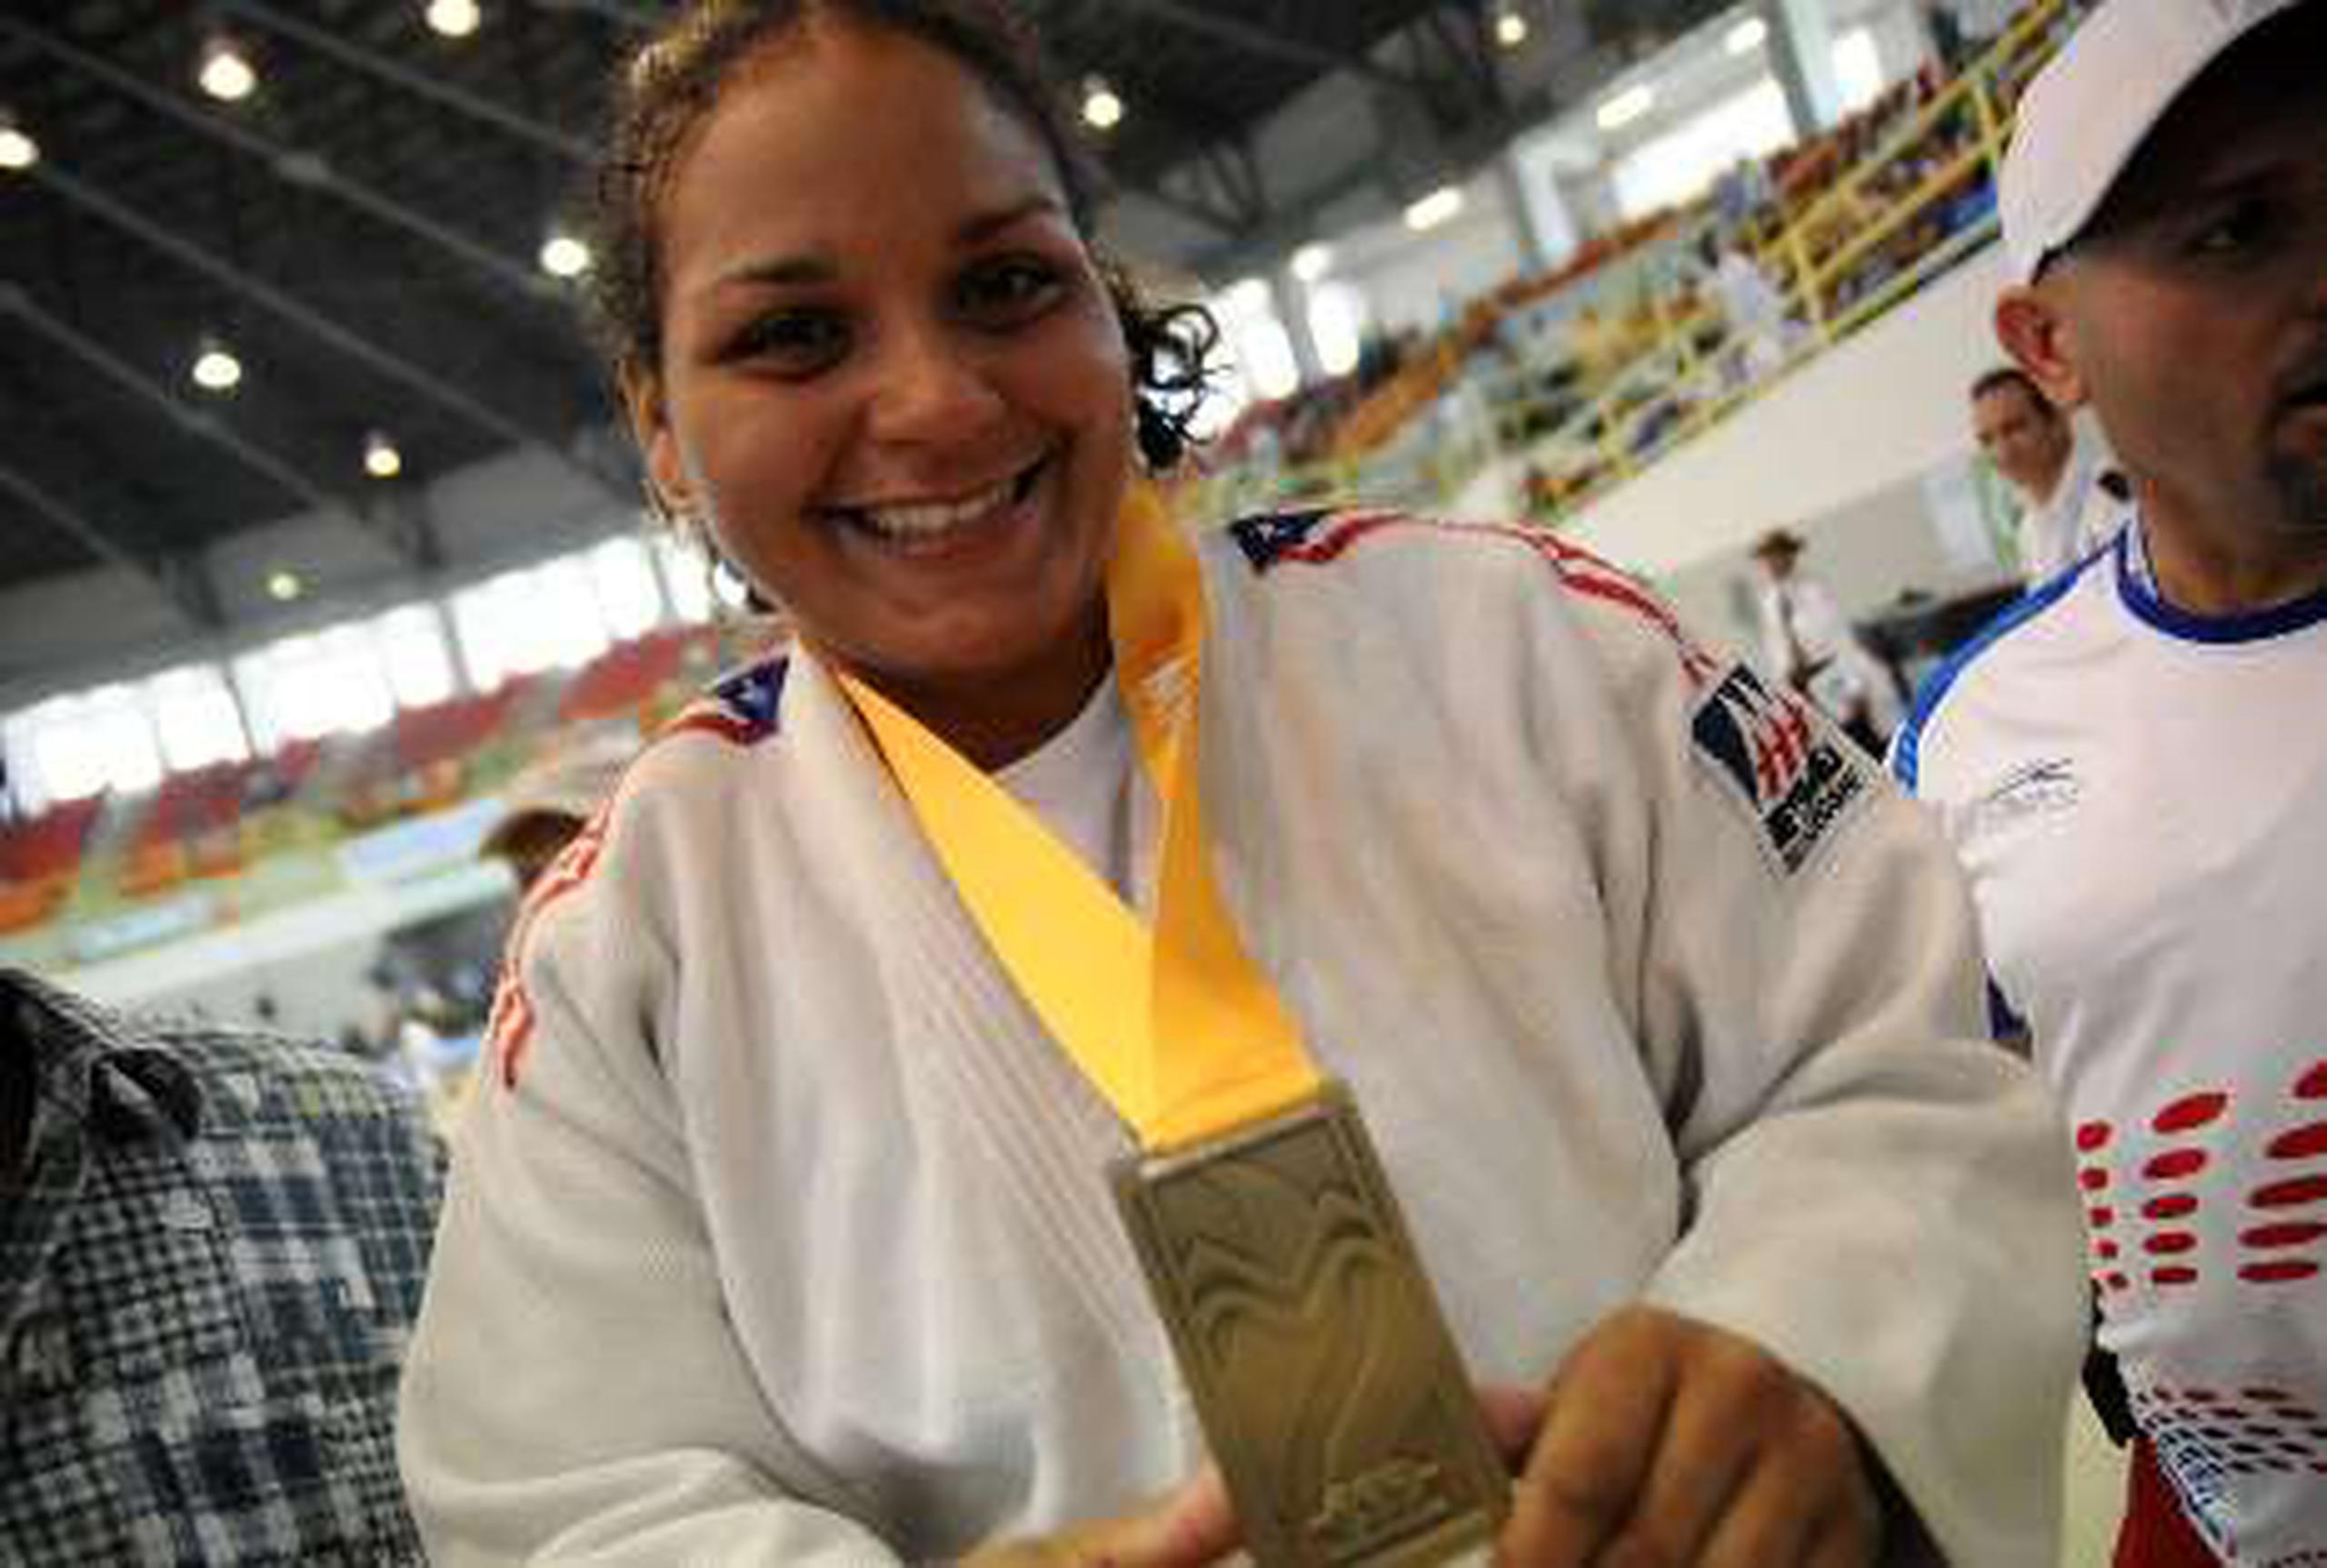  Melissa Mojica se llevó el oro en la categoría de  +78kg  del Campeonato de Judo del Caribe efectuado en República Dominicana.&nbsp;<font color="yellow">( Primera Hora / Archivo  /  Teresa Canino Rivera )</font>